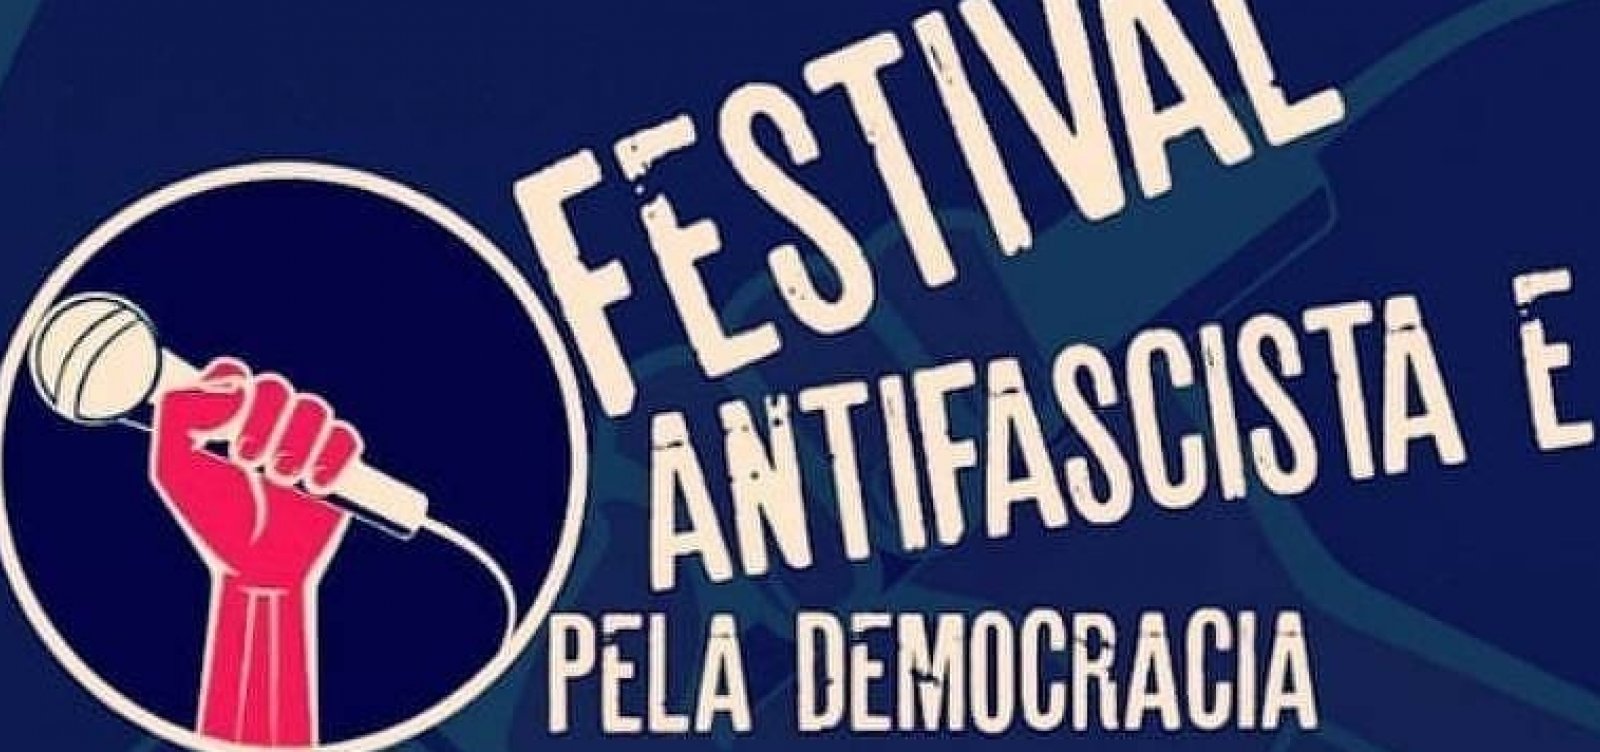 Festival de Jazz do Capão divulga data após segundo parecer negativo da Funarte